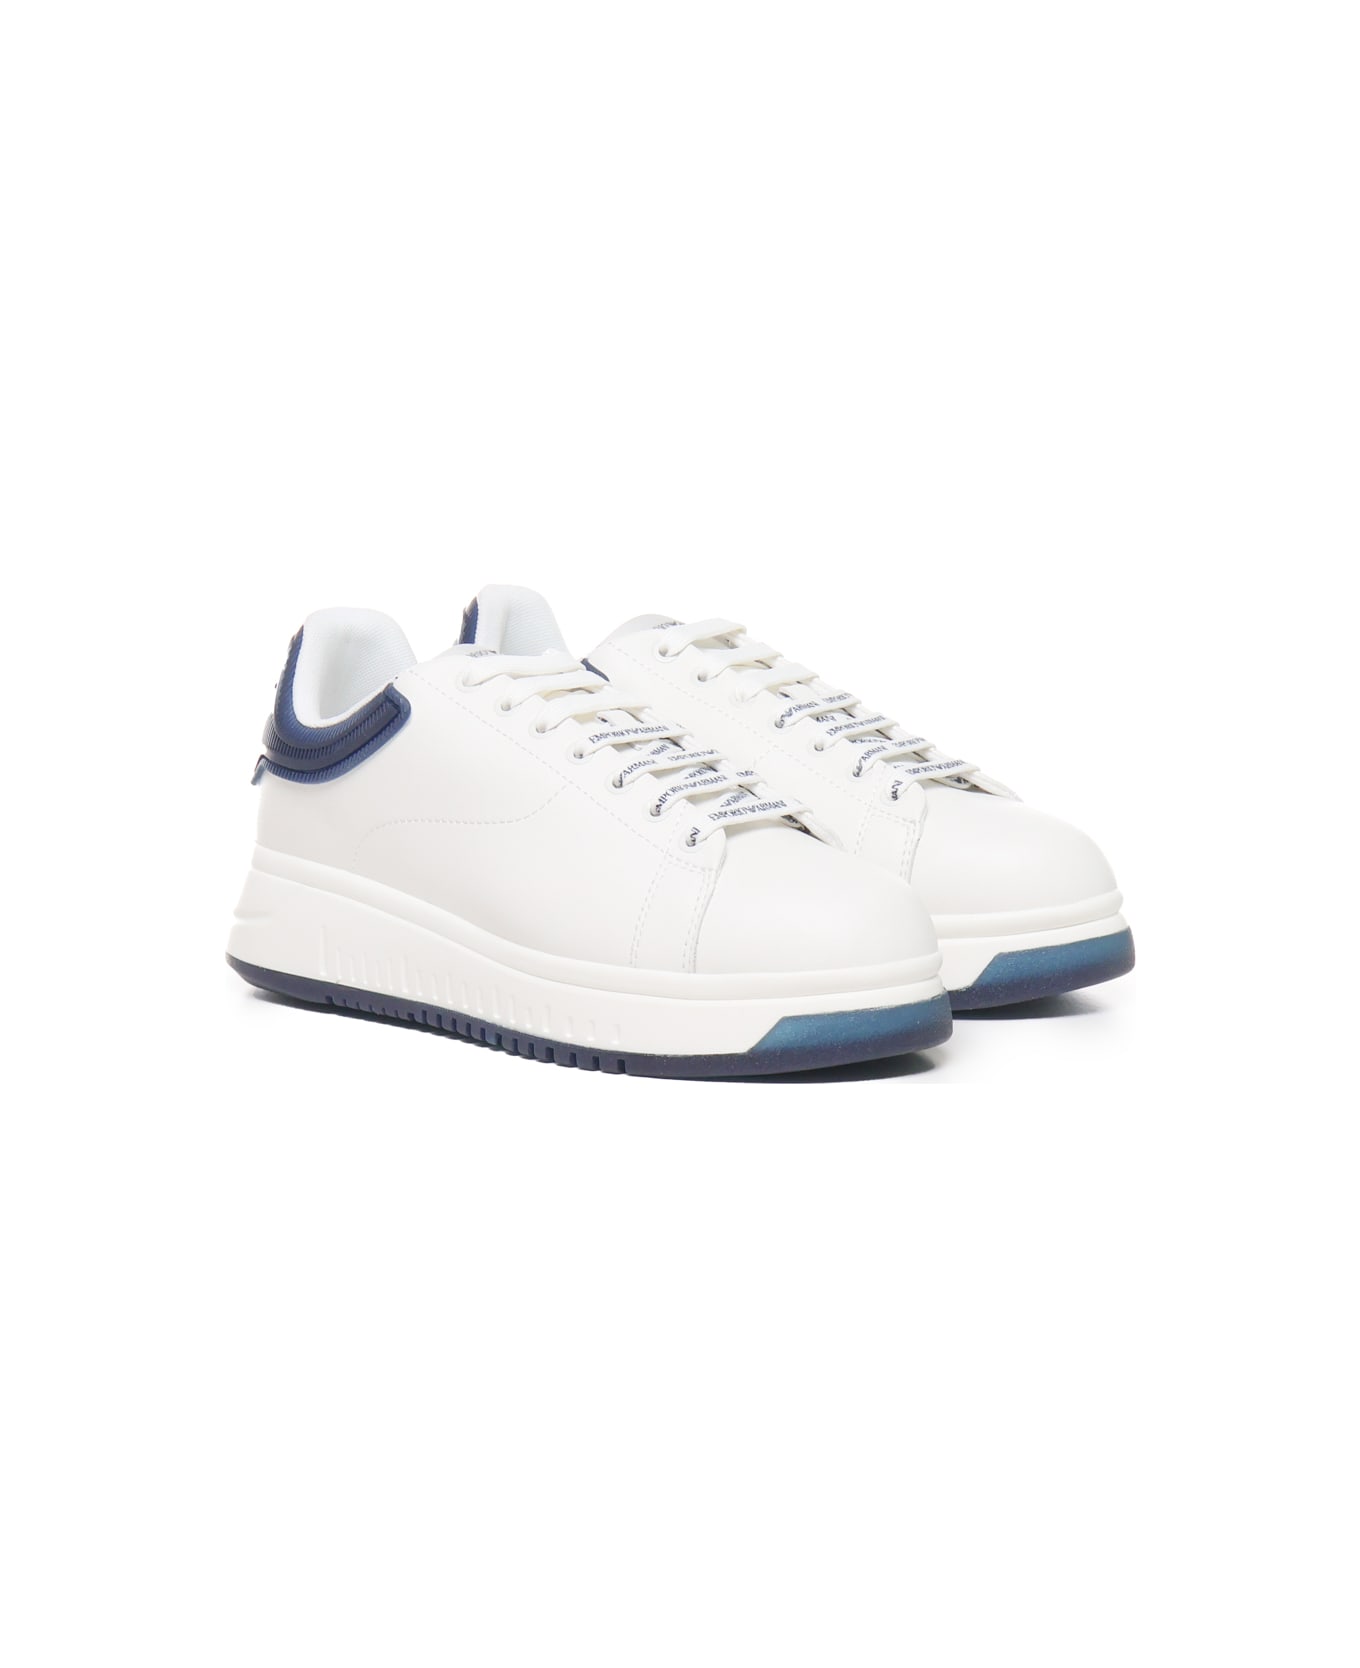 Giorgio Armani Sneakers With Contrasting Rivet Giorgio Armani - White, blue